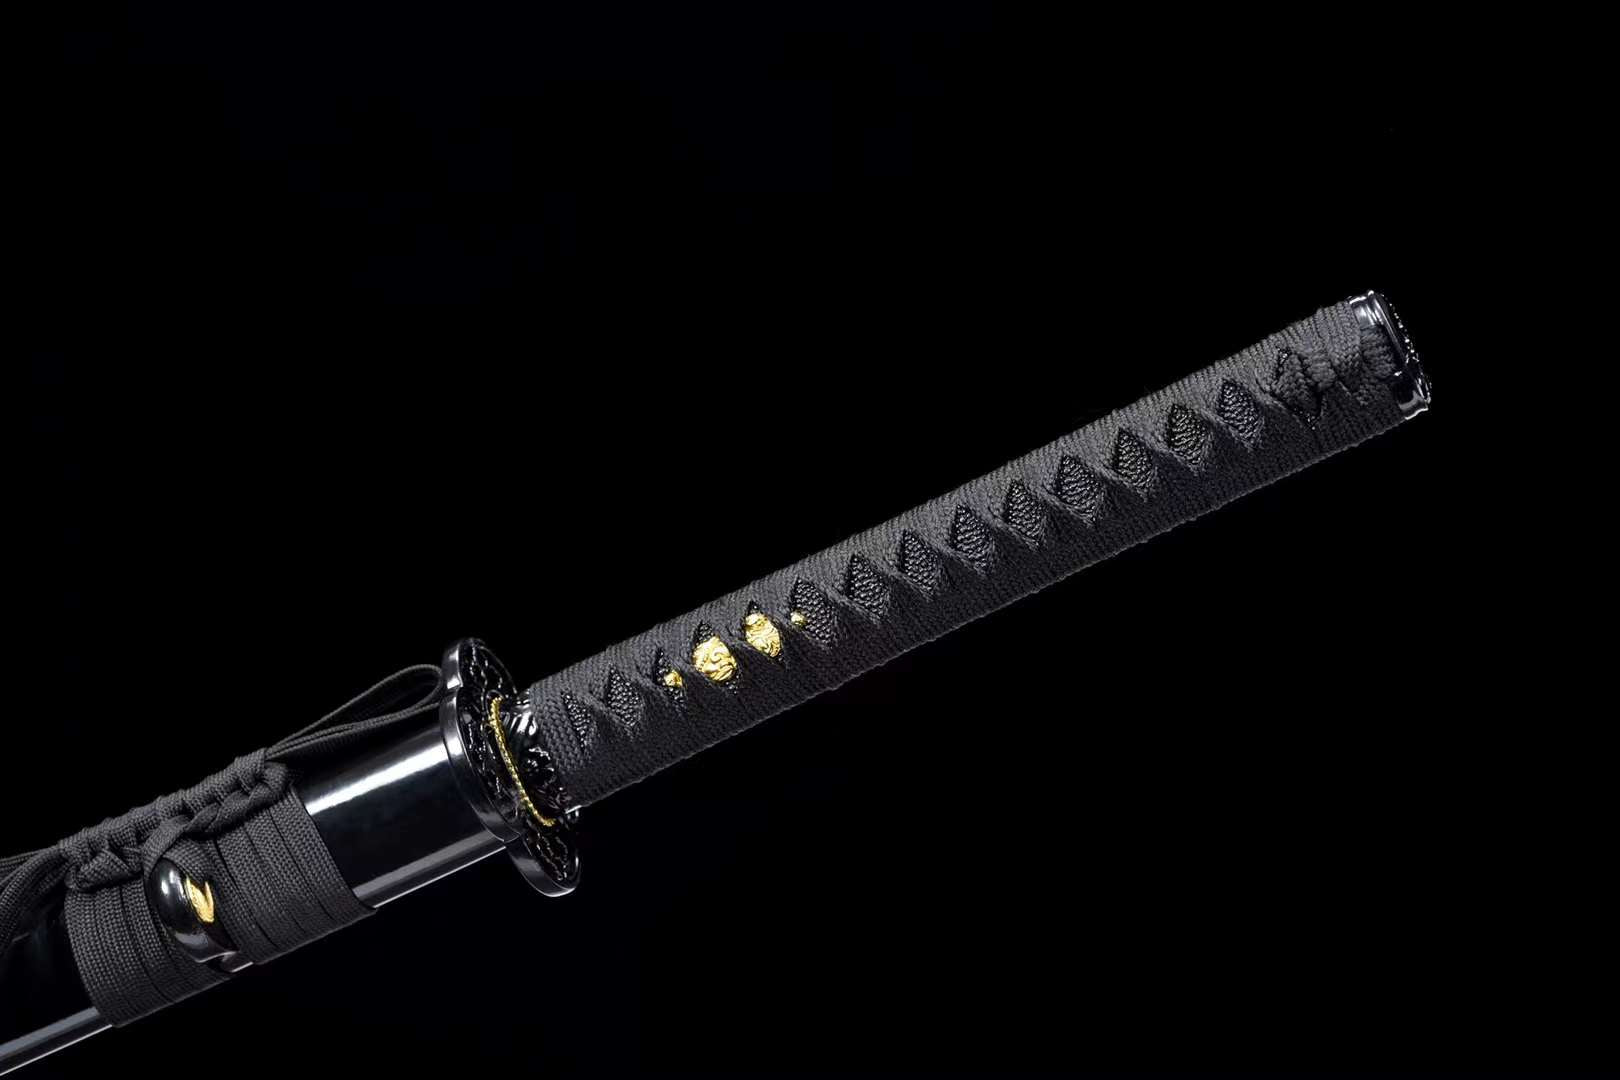 espada wakizashi ninja ninjato